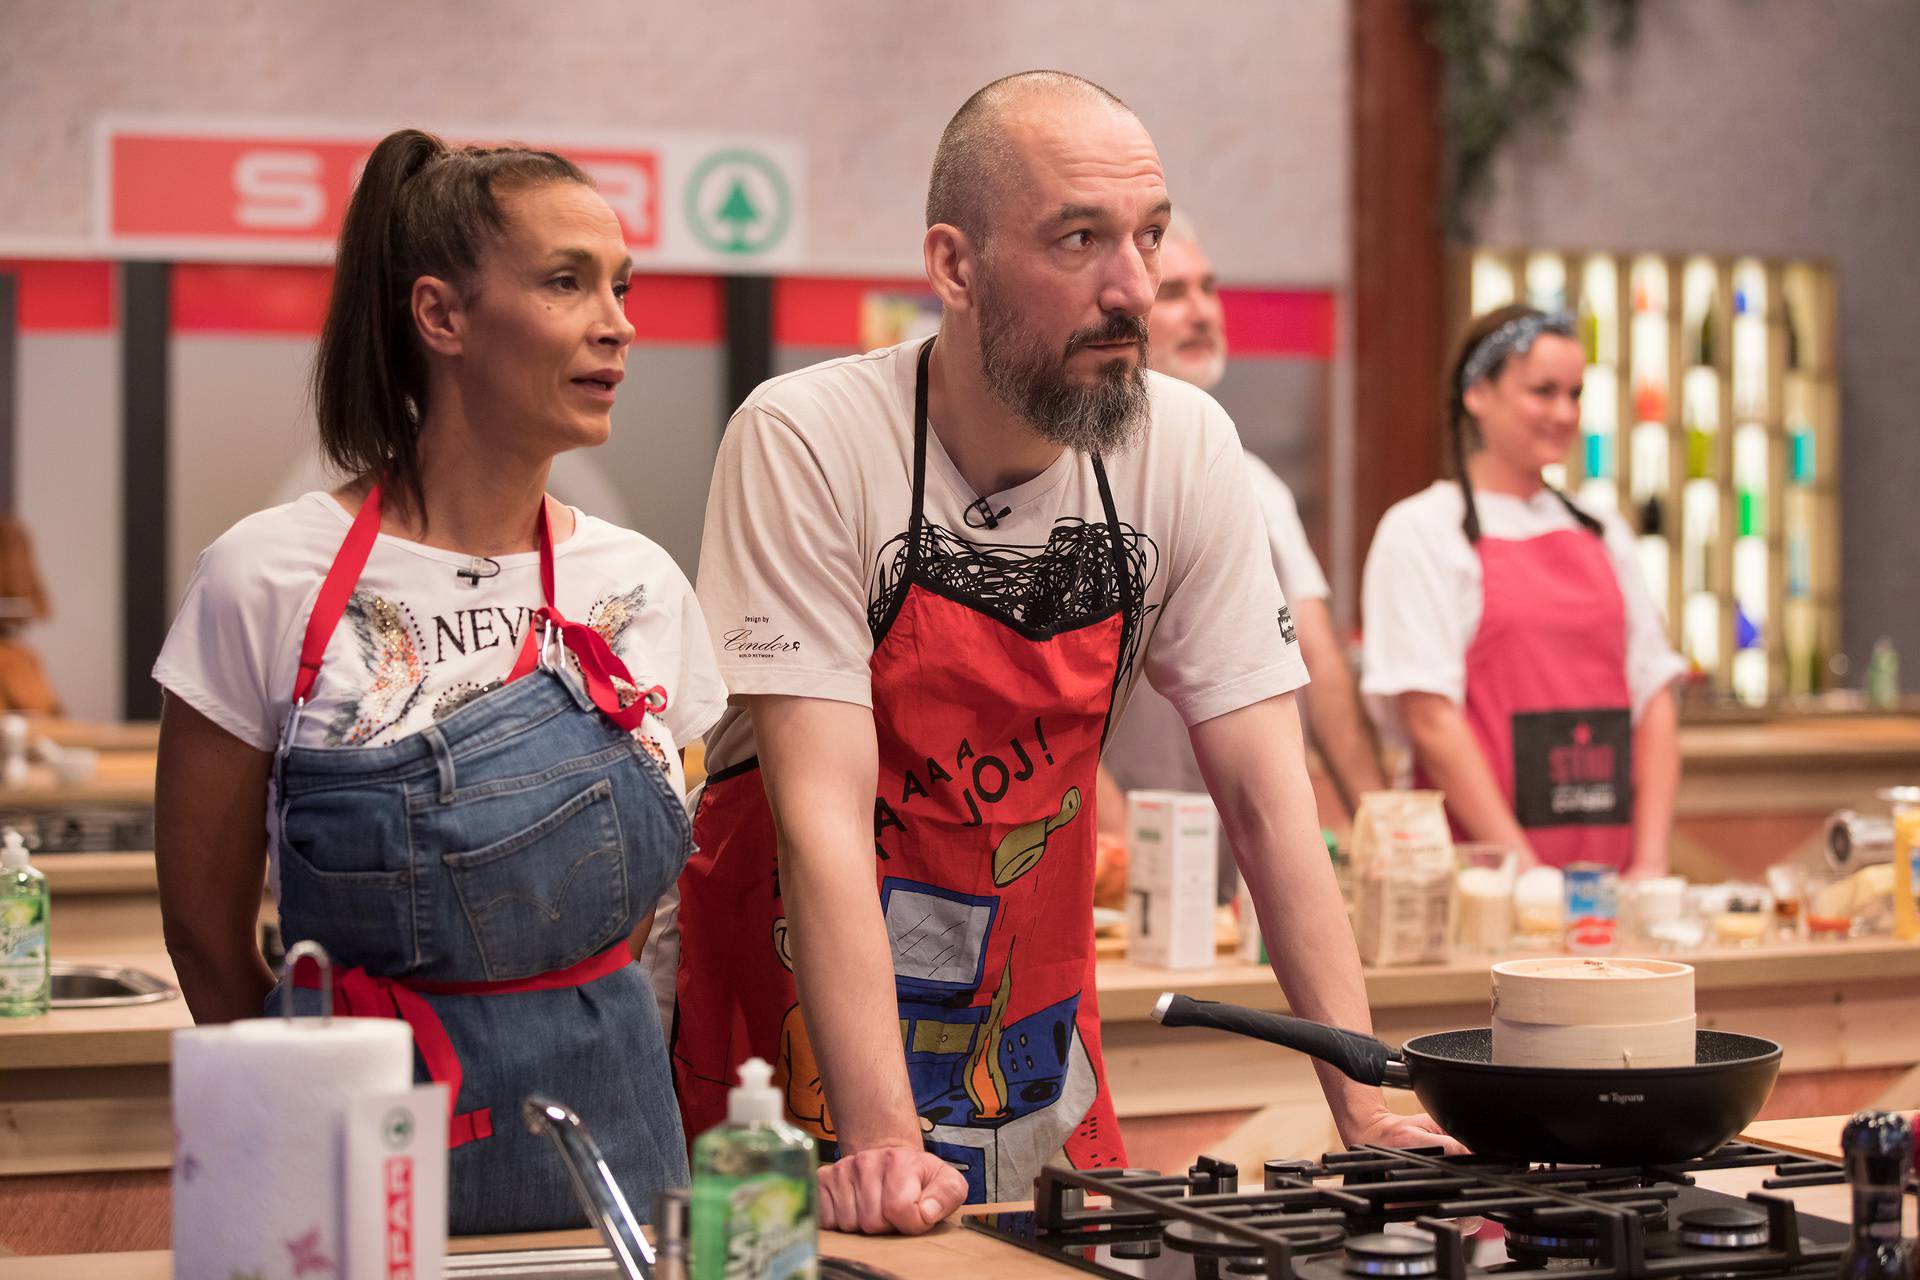 Počela je nova sezona kuhanja: Ivana Banfić i Velimir Grgić s azijskim jelom izborili prolazak